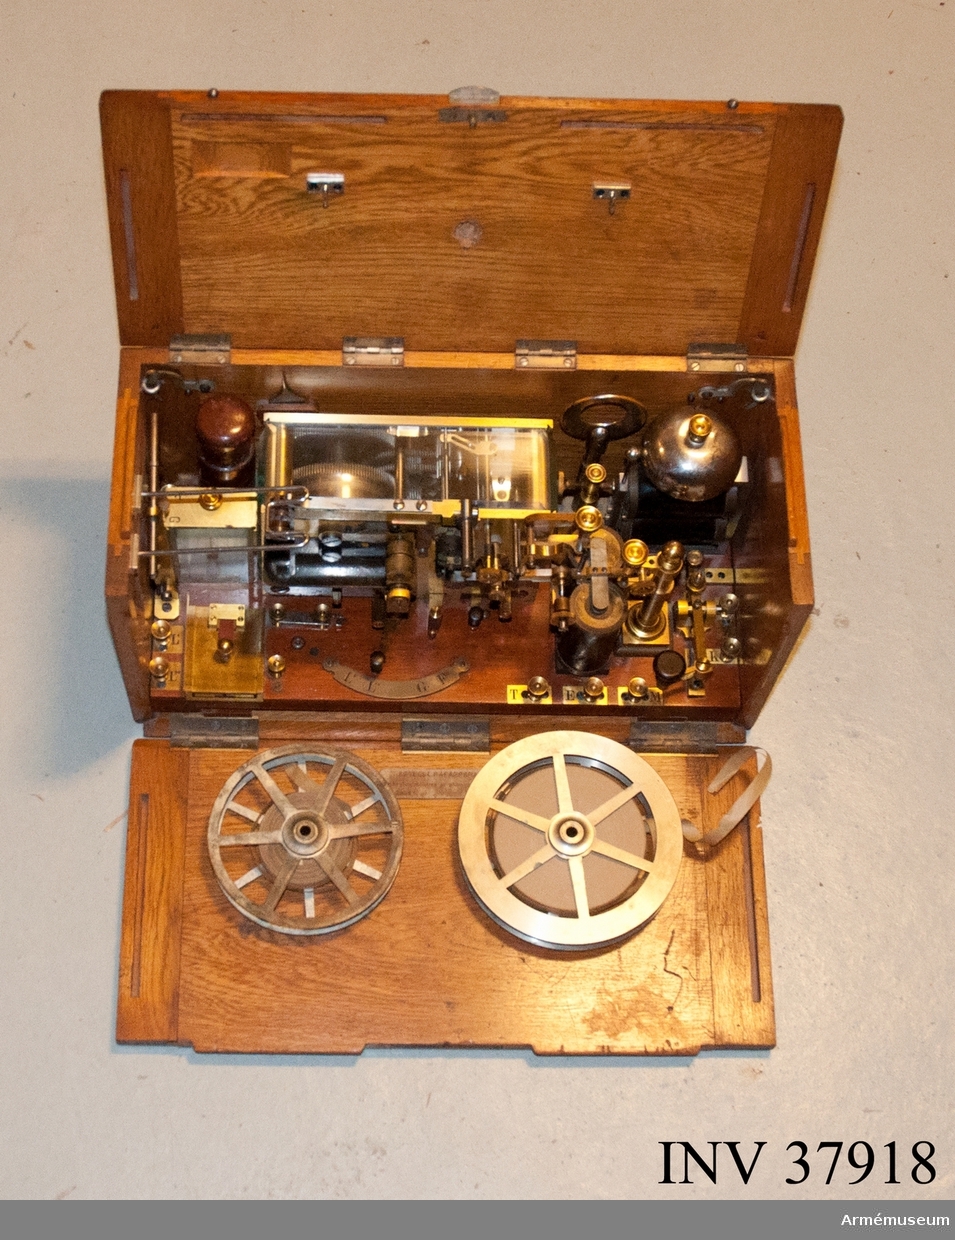 Grupp H I.

Morsetelegrafapparat bestående av åskledare, telegraferingsnyckel, galvanometer, skrivapparat, elektromagneter, väckverk, trevägsomkopplare, strömledare och pappersrullhållare.

För transport insatt i låda av trä med tre nedfällbara sidor.